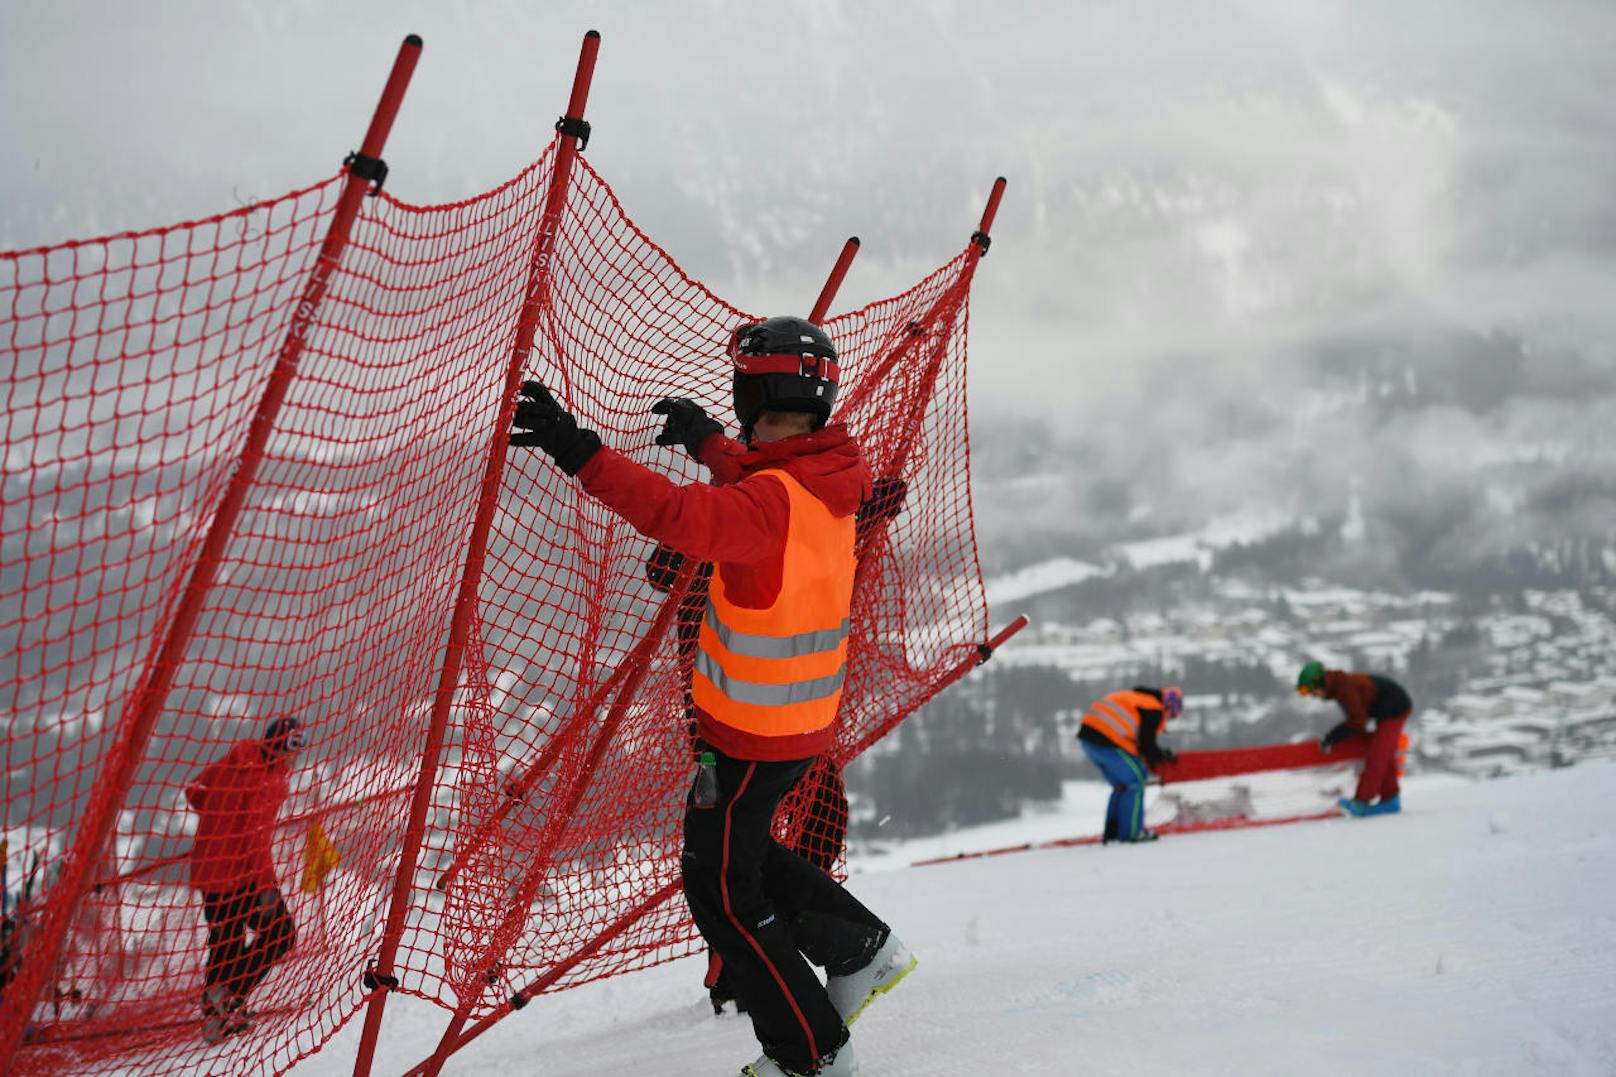 Die letzten Rennen vor der WM hätten in Garmisch stattfinden sollen - nämlich eine Abfahrt und ein Riesentorlauf. Aber: Schnee und Wind führten zu einer Absage.